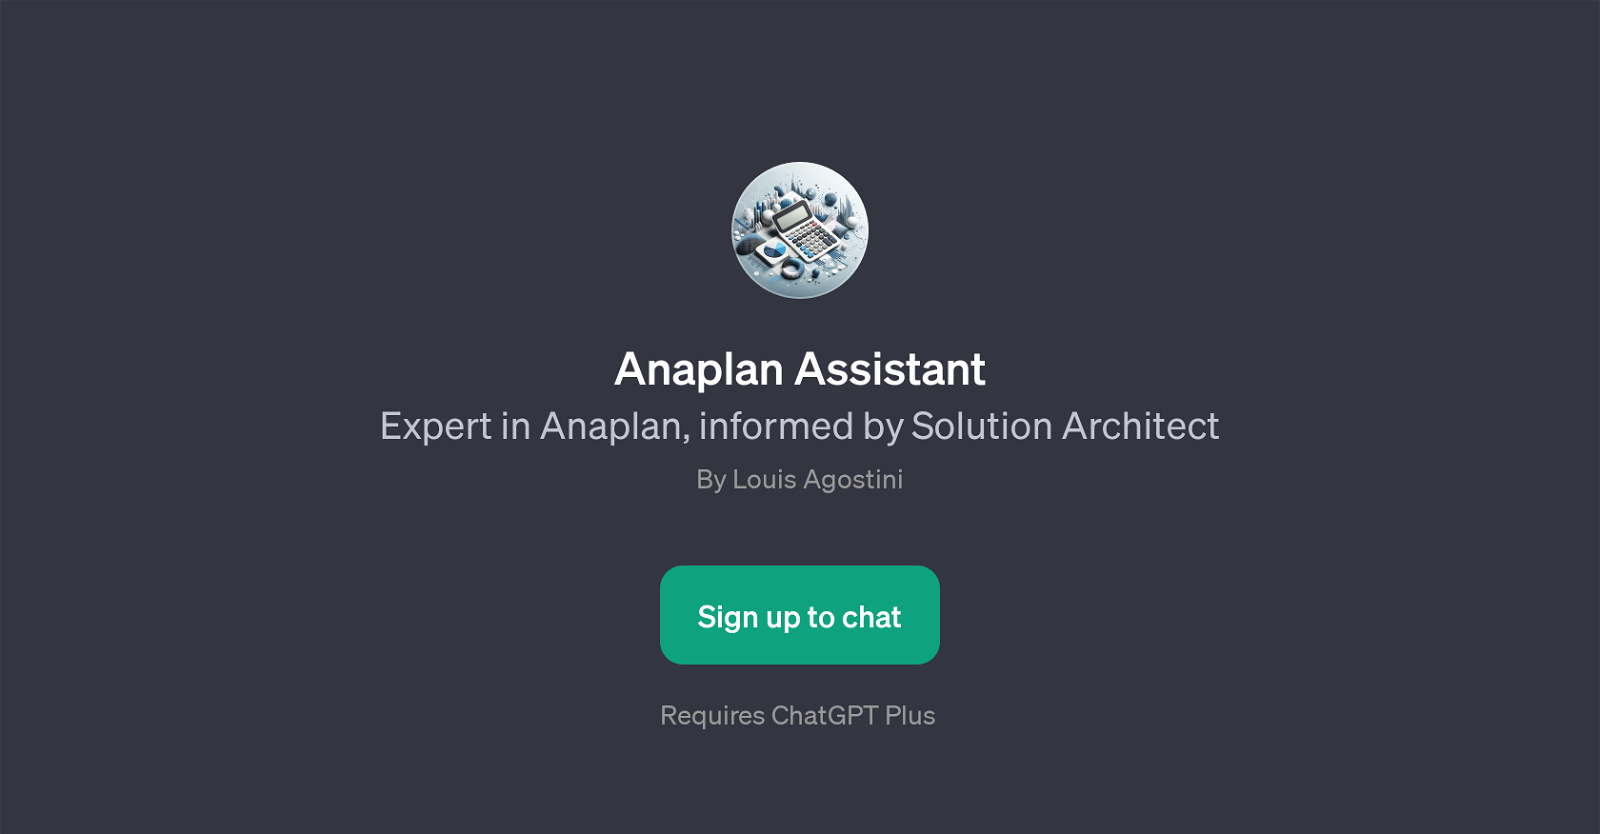 Anaplan Assistant website